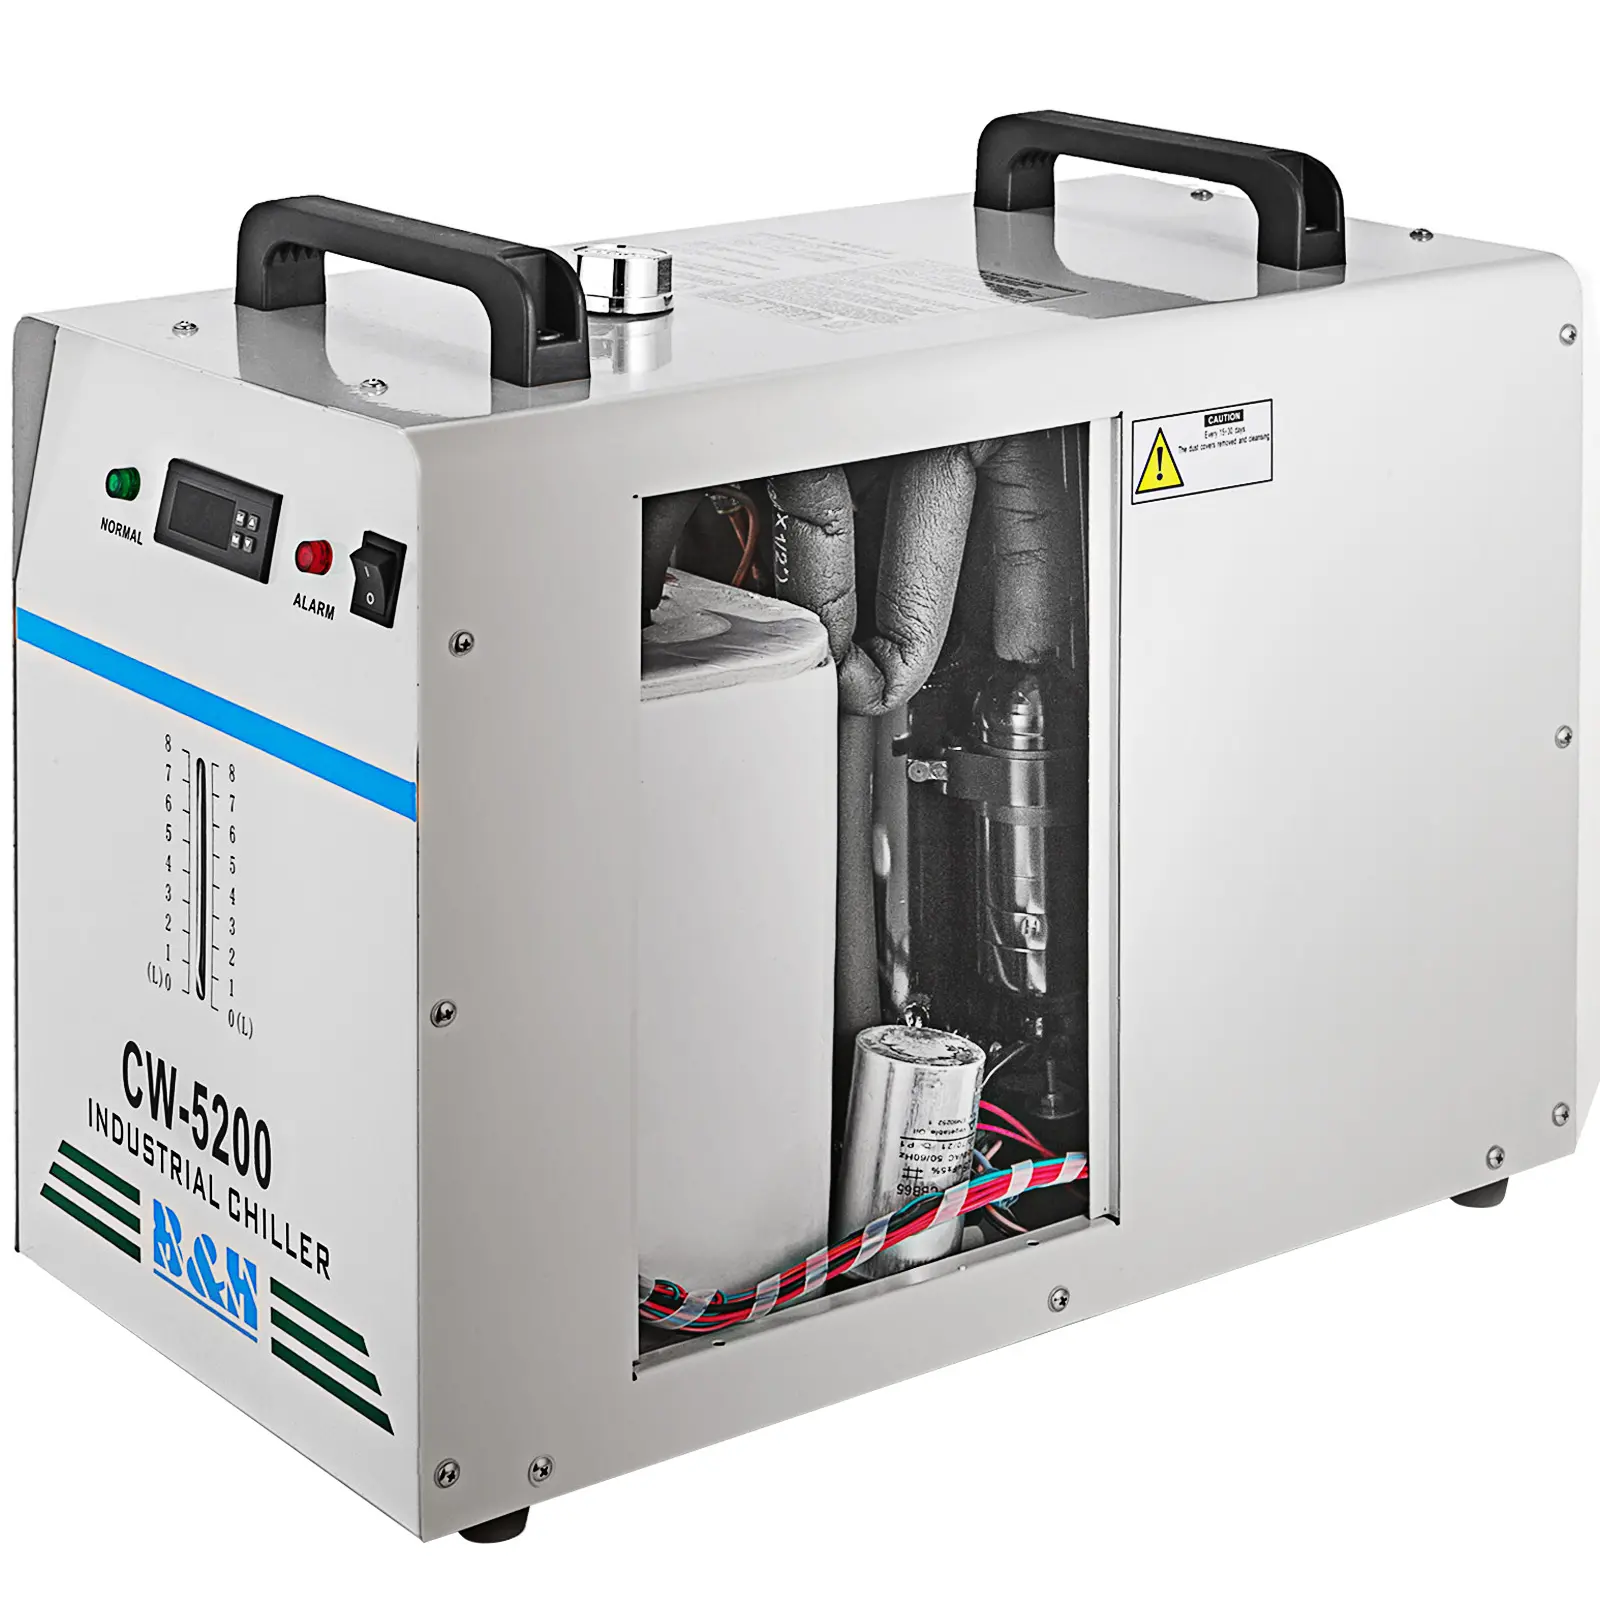 Grand refroidisseur à eau avec Tube Laser Co2, refroidisseur d'air, Cw5000 Cw5200 Cw3000, prix d'usine